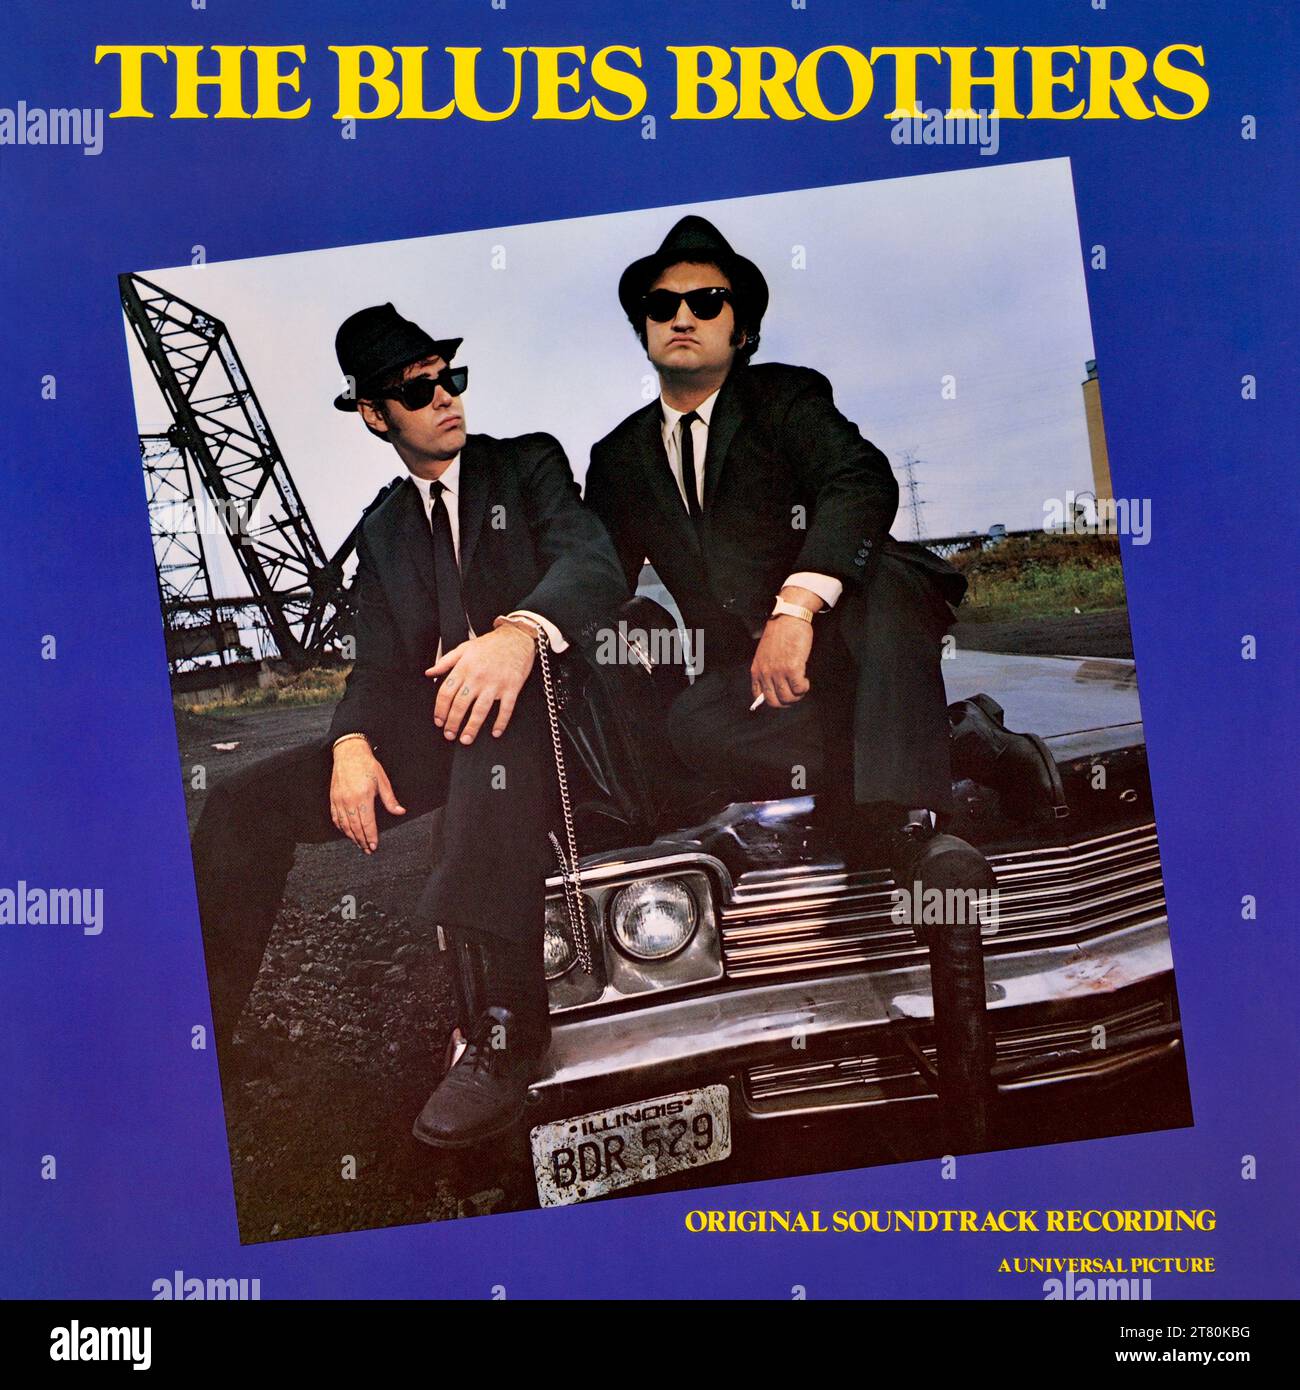 The Blues Brothers - copertina originale dell'album in vinile - The Blues Brothers (Original Soundtrack Recording) - 1986 Foto Stock